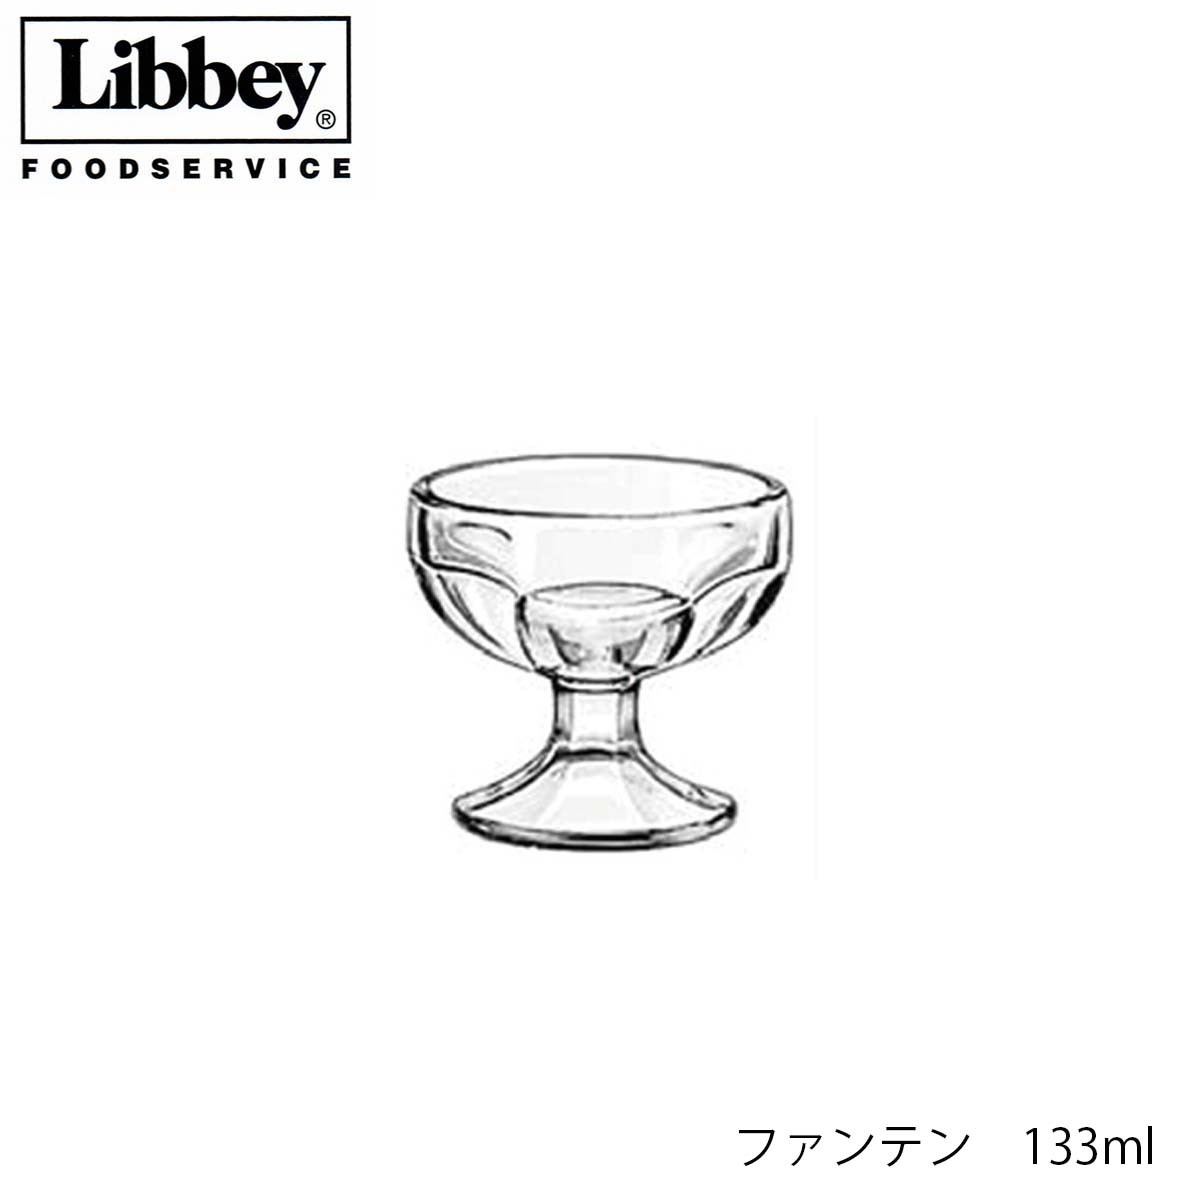 口径85mm　高さ77mm 容量　133ml　満杯容量 素材　ソーダガラス 【Libbey リビー】 1892年、アメリカに設立 アメリカ国内で、フードサービス業への提供を大きく展開。 ブランド名を世界中に広める。 2007年、中国工場を設立し生産開始。世界中にブランドイメージを確立させています。Libbey リビー ファンテン 【5162】133ml パフェグラス ソーダガラス製 10